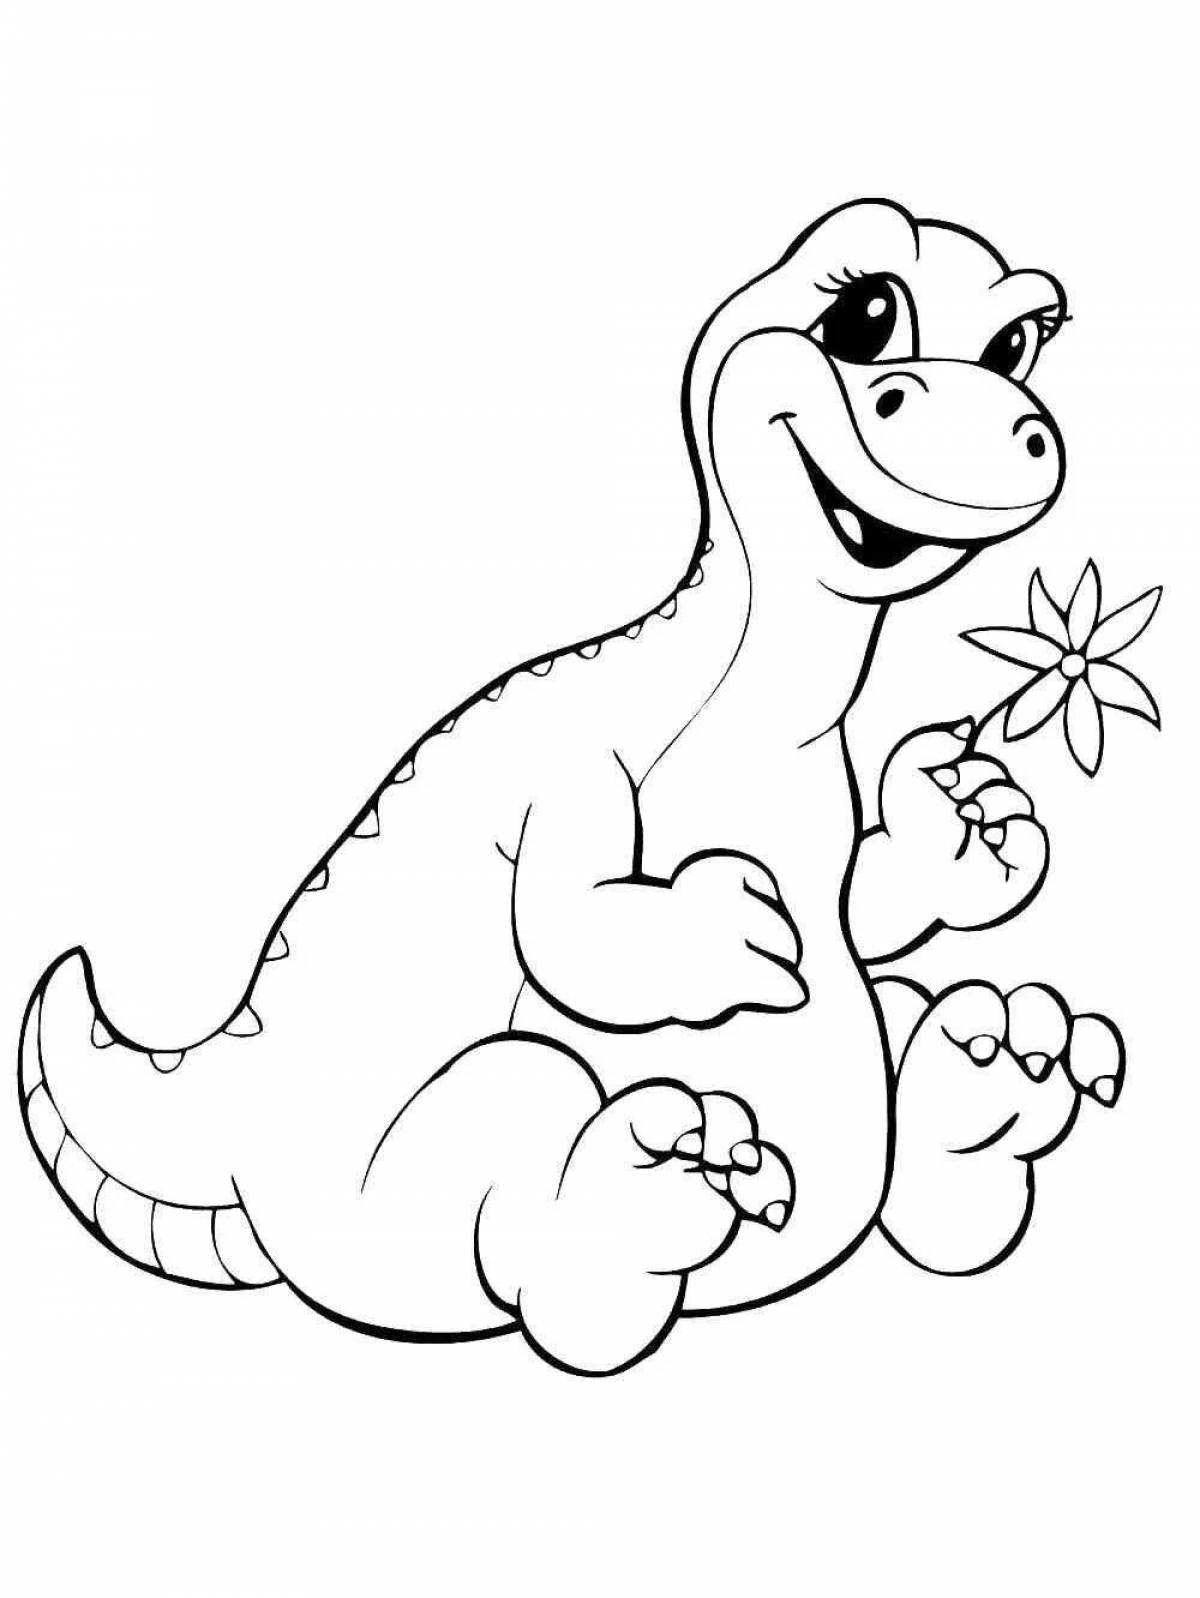 Раскраски динозавры формат а4. Динозавры / раскраска. Раскраска "Динозаврики". Динозавр раскраска для детей. Раскраска Динозаврики для малышей.